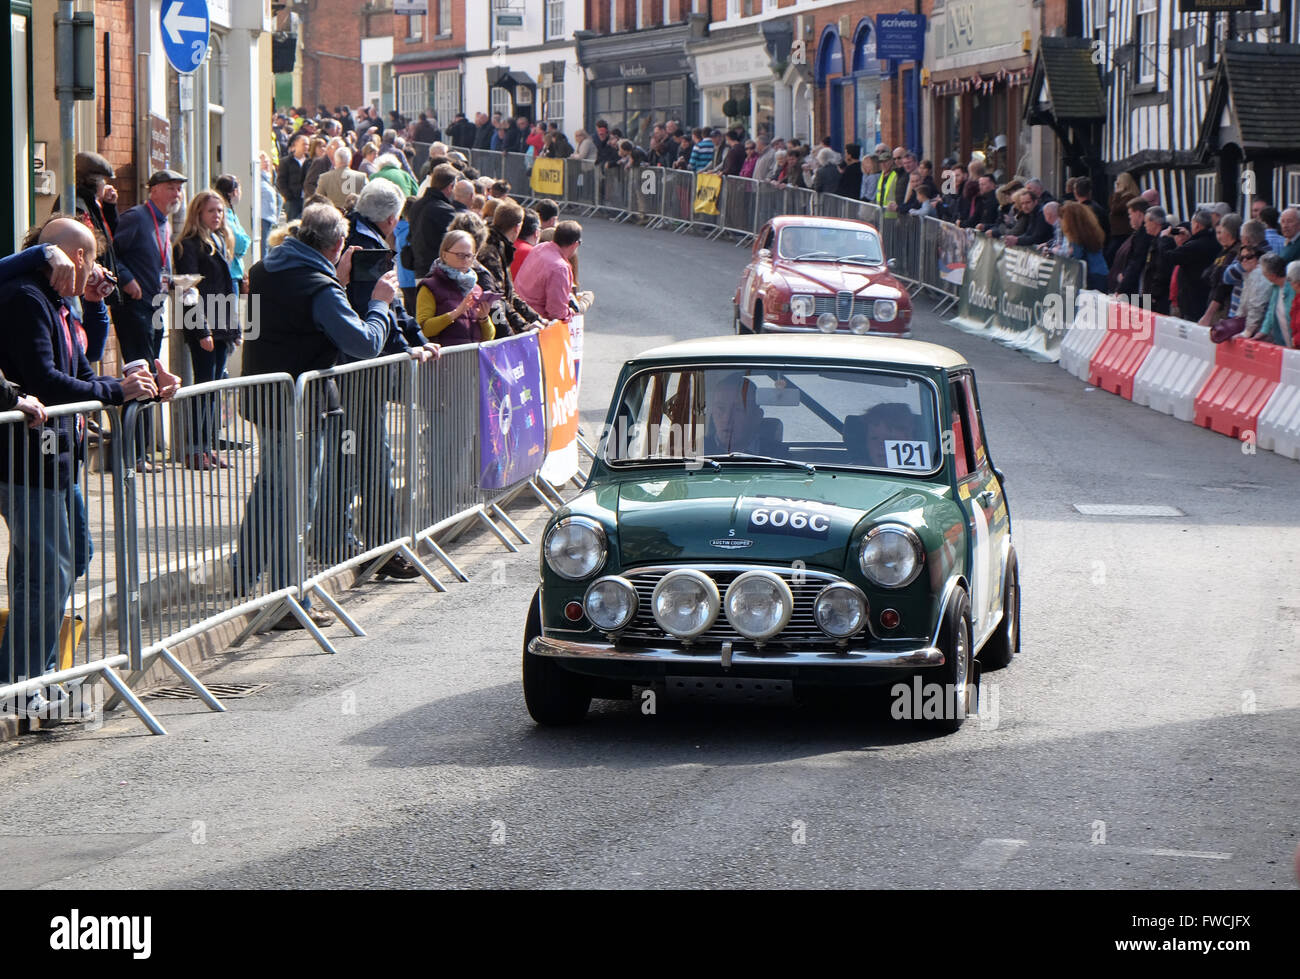 Bromyard, Herefordshire, UK, avril 2016 - le premier Festival de la vitesse dans les rues de Bromyard le berceau de la société automobile Morgan. Montré ici est une Mini Cooper S sports car racing le long de la rue principale. Banque D'Images